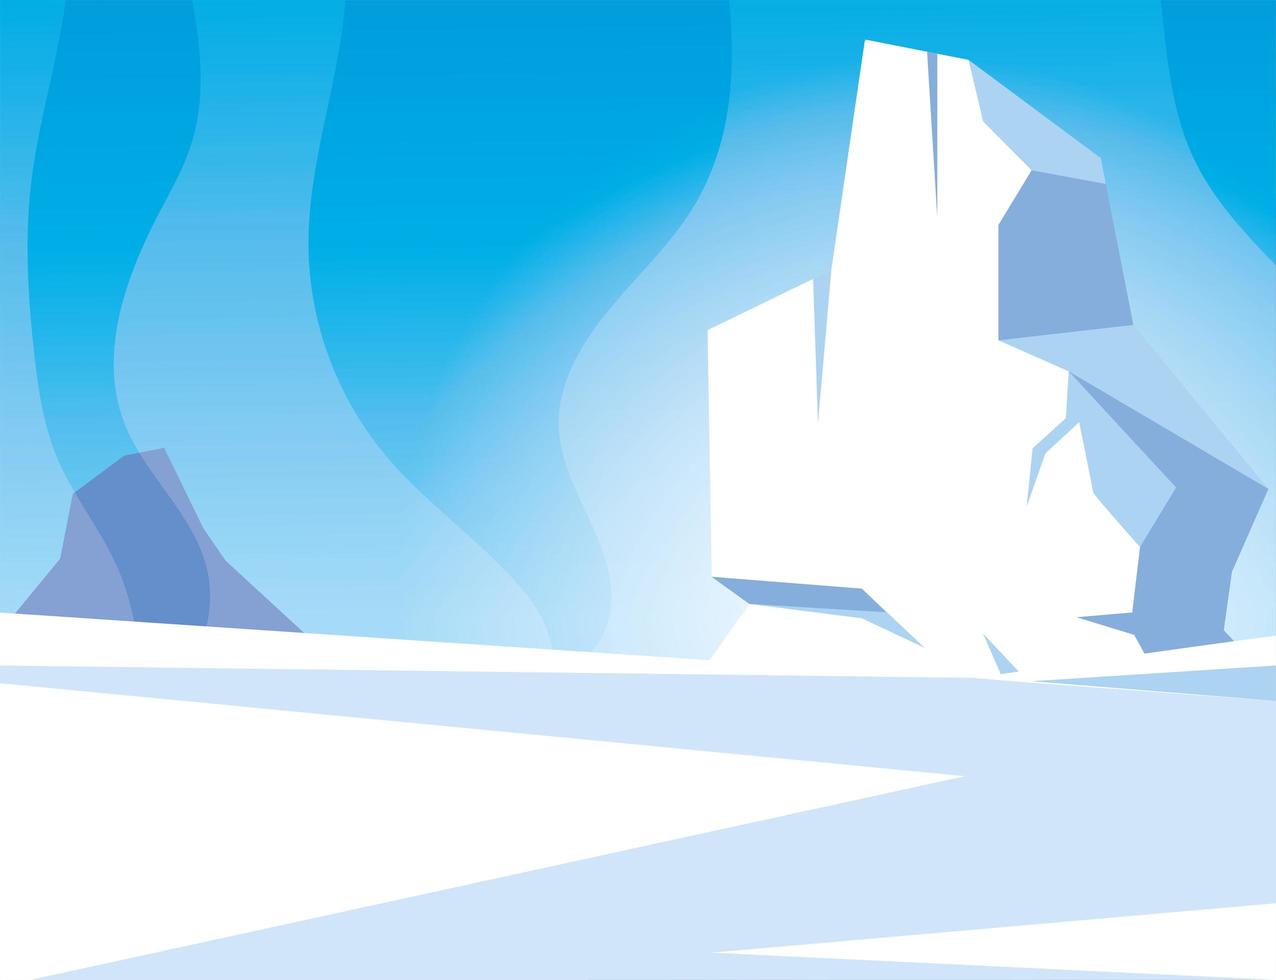 paesaggio artico con cielo azzurro e iceberg, polo nord vettore